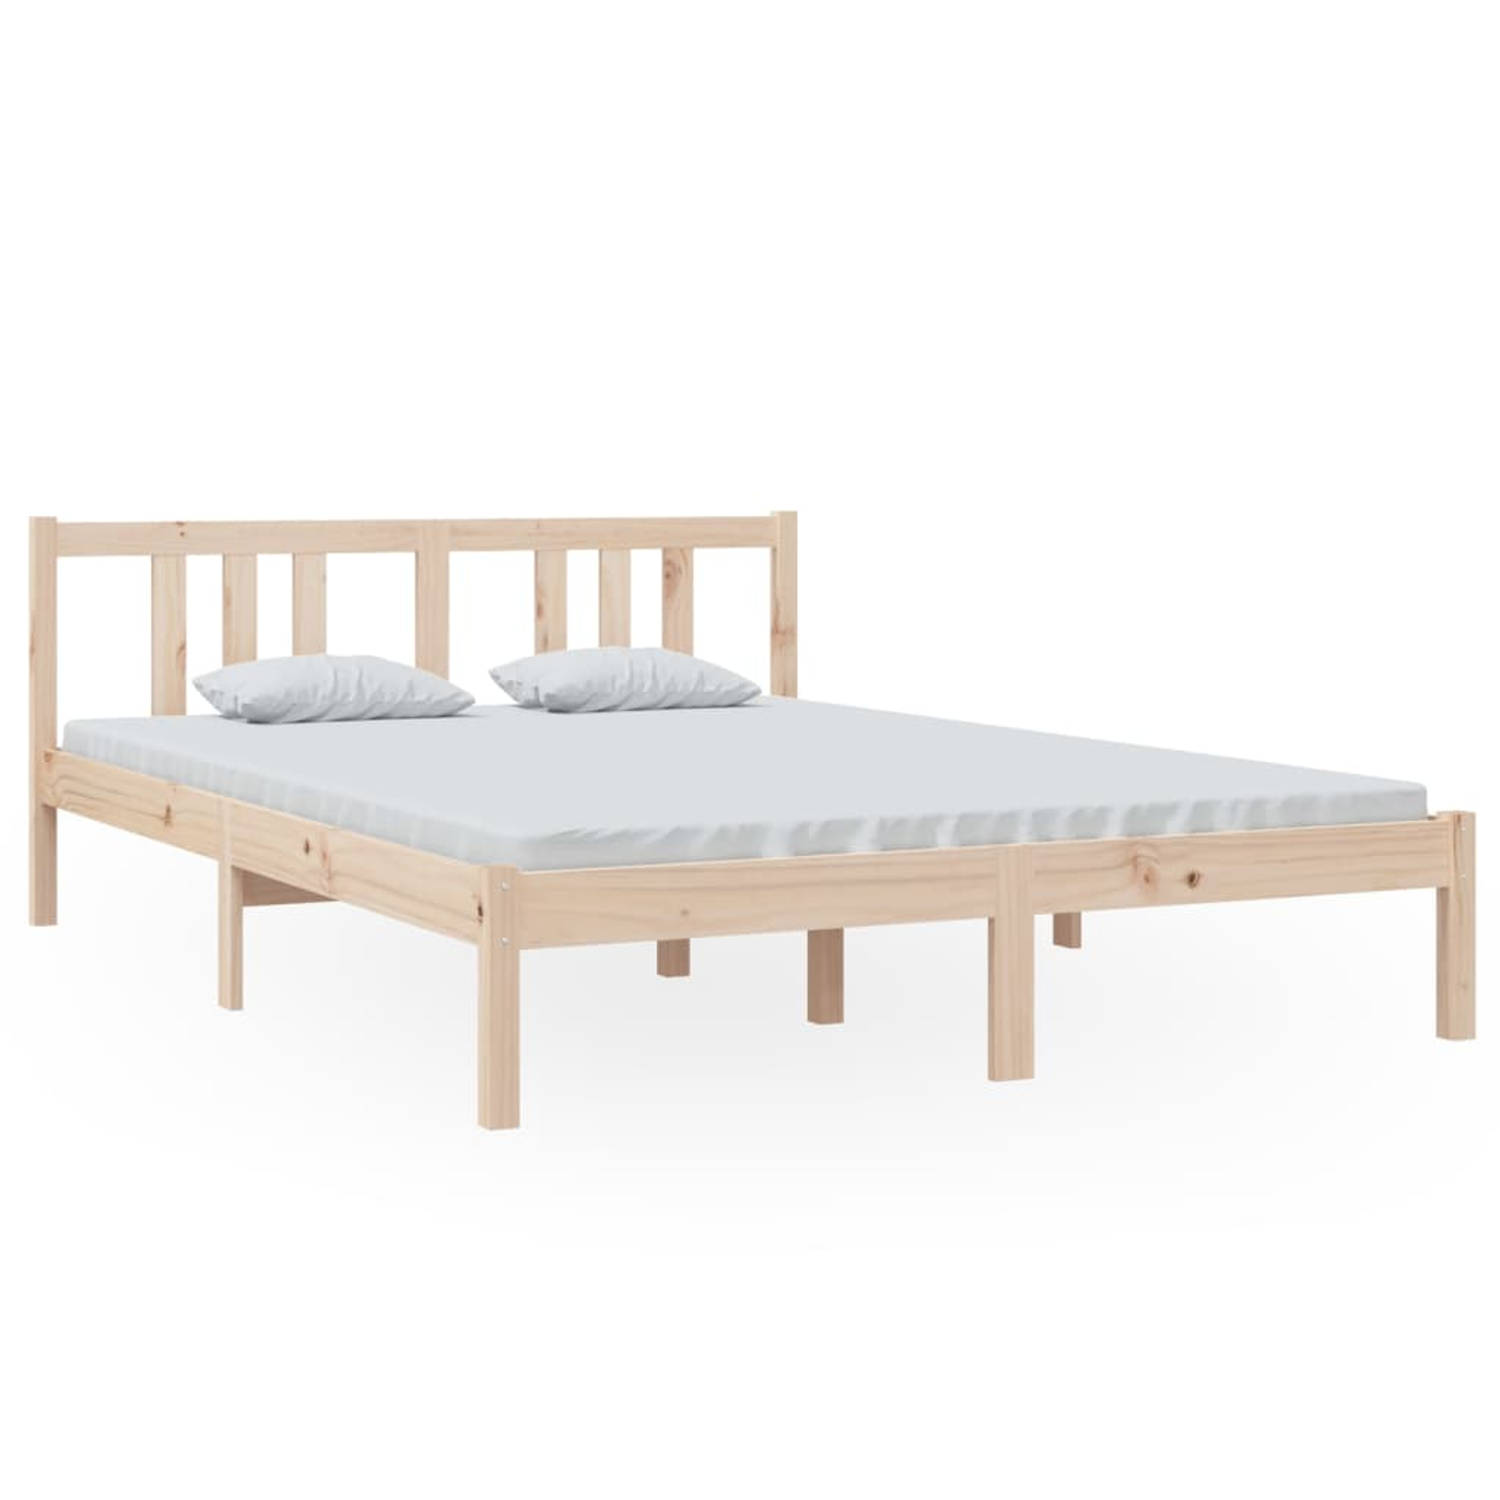 The Living Store Bedframe massief hout 140x200 cm - Bedframe - Bedframes - Bed - Bedbodem - Ledikant - Bed Frame - Massief Houten Bedframe - Slaapmeubel - Tweepersoonsbed - Bedden